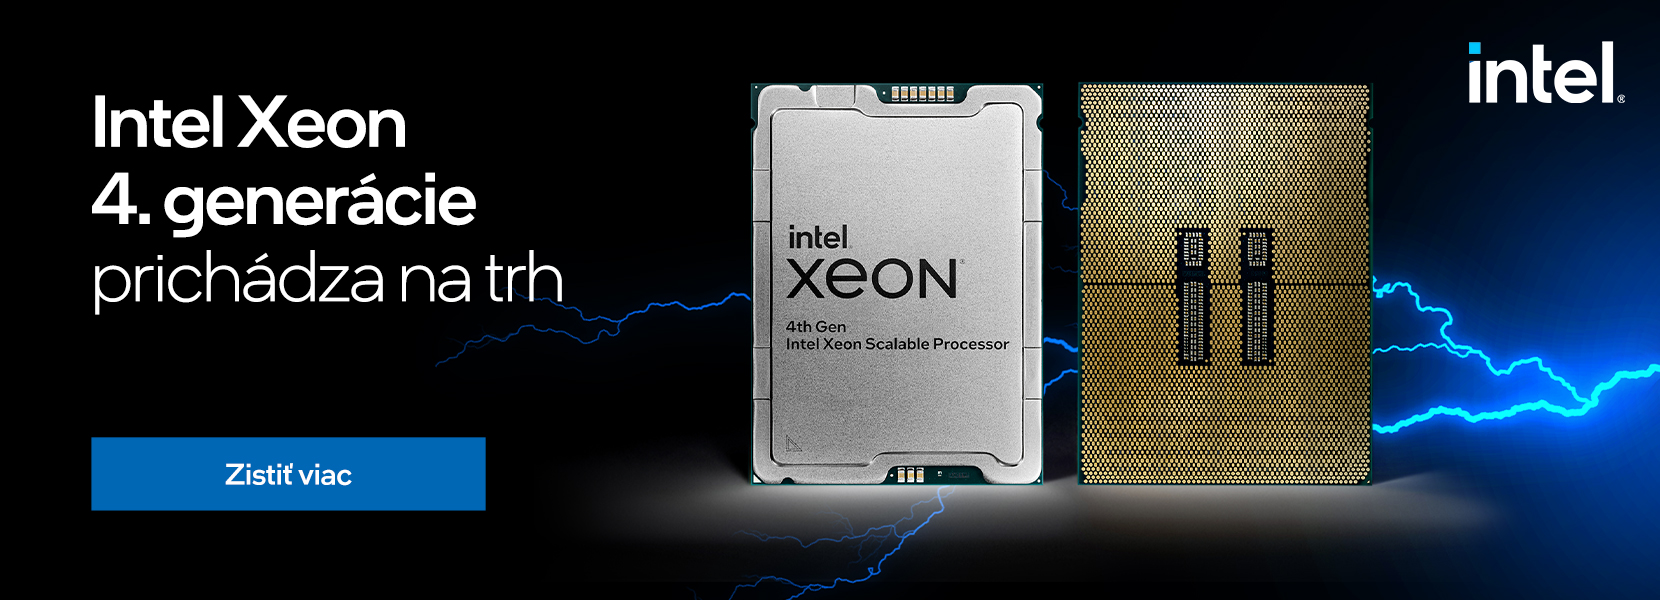 Intel Xeon 4. generácie prichádza na trh